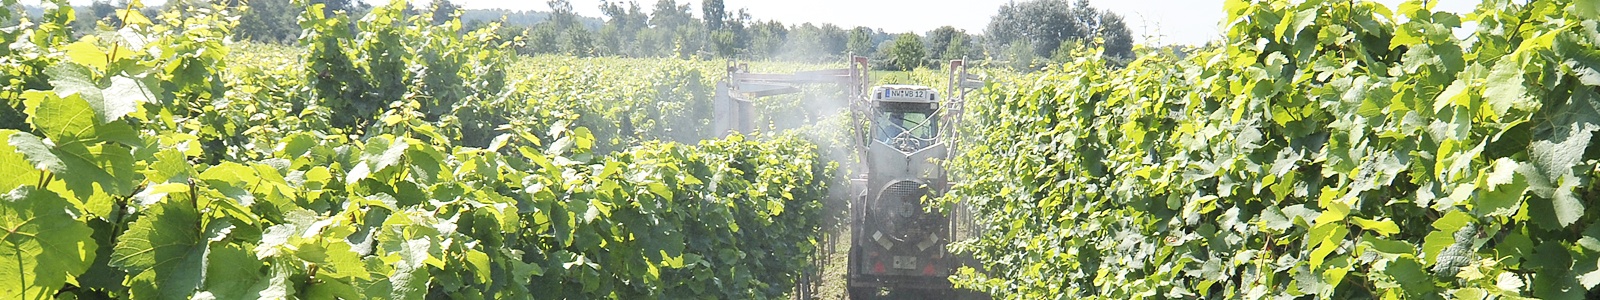 Traktor mit Pflanzenschutzspritze im Weinberg ©Feuerbach